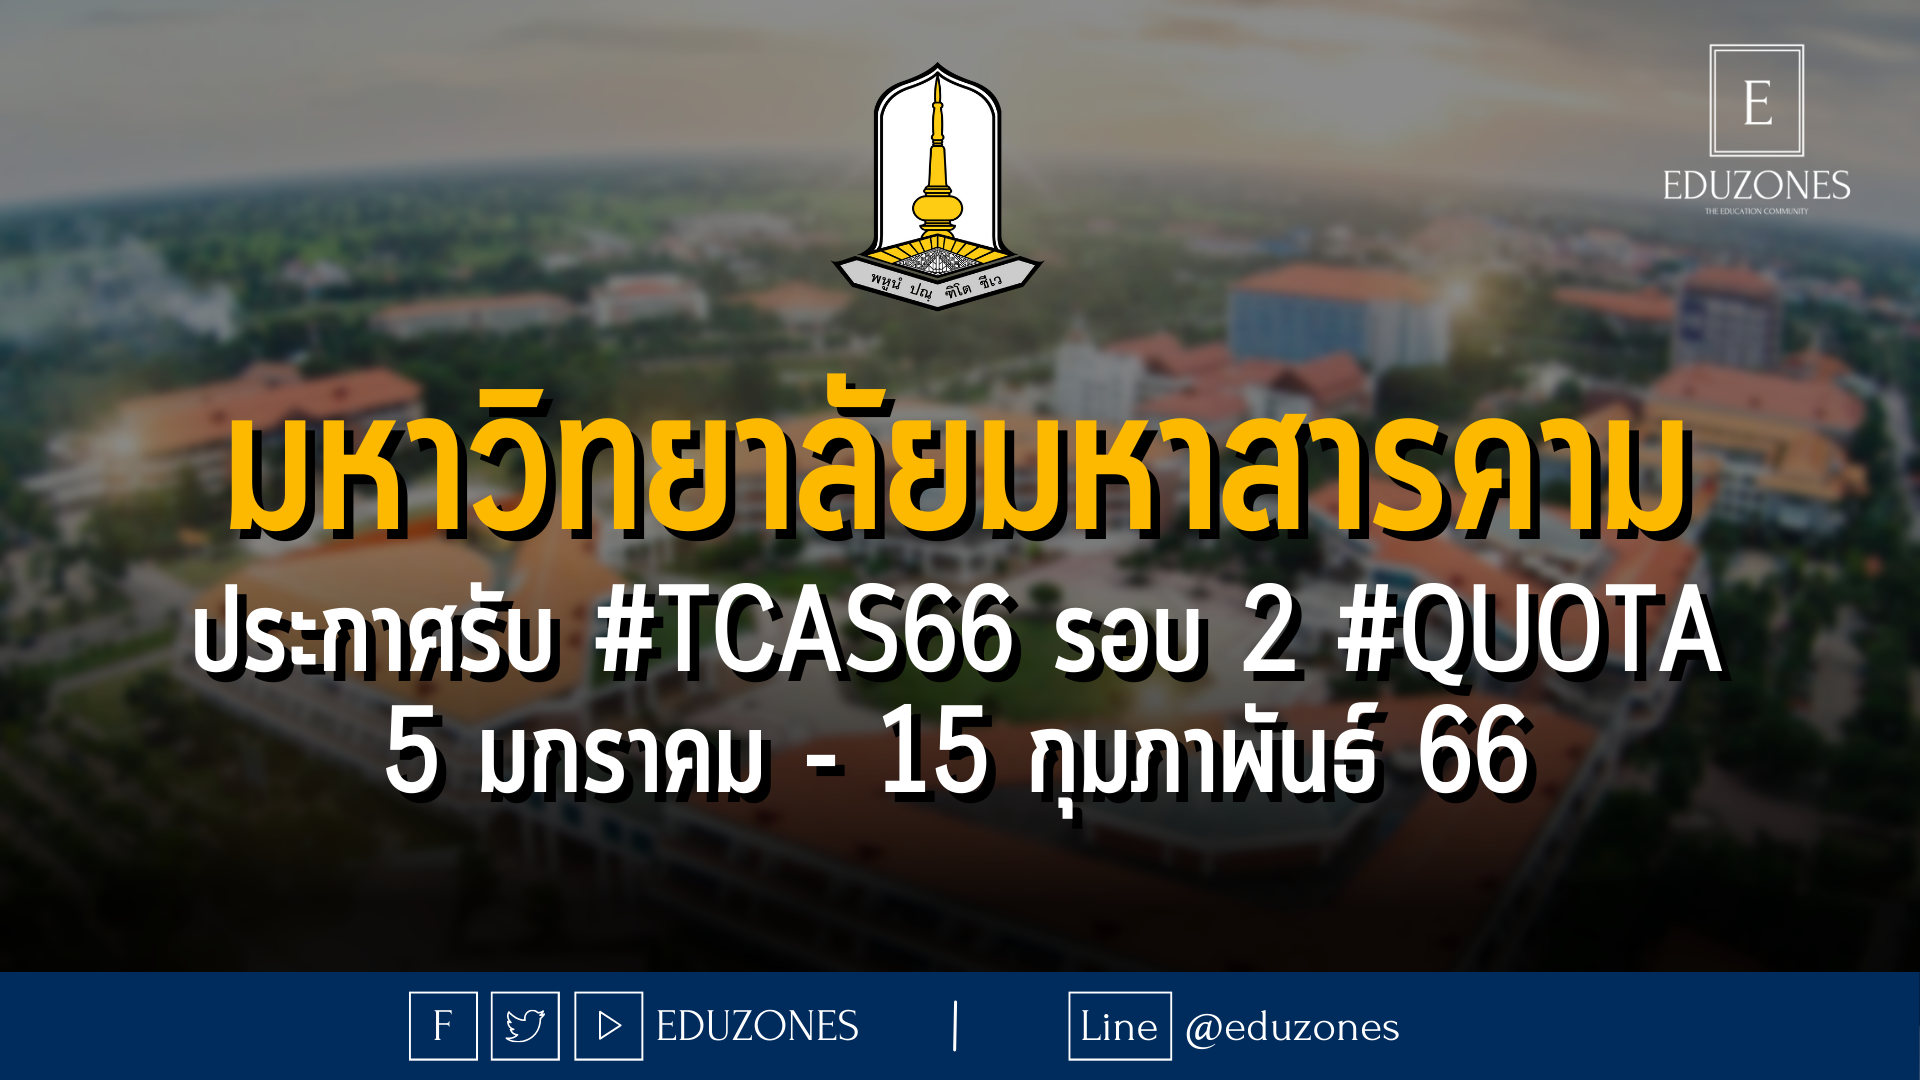 มหาวิทยาลัยมหาสารคาม ประกาศรับ #TCAS66 รอบ 2 #QUOTA : 5 มกราคม - 15 กุมภาพันธ์ 66